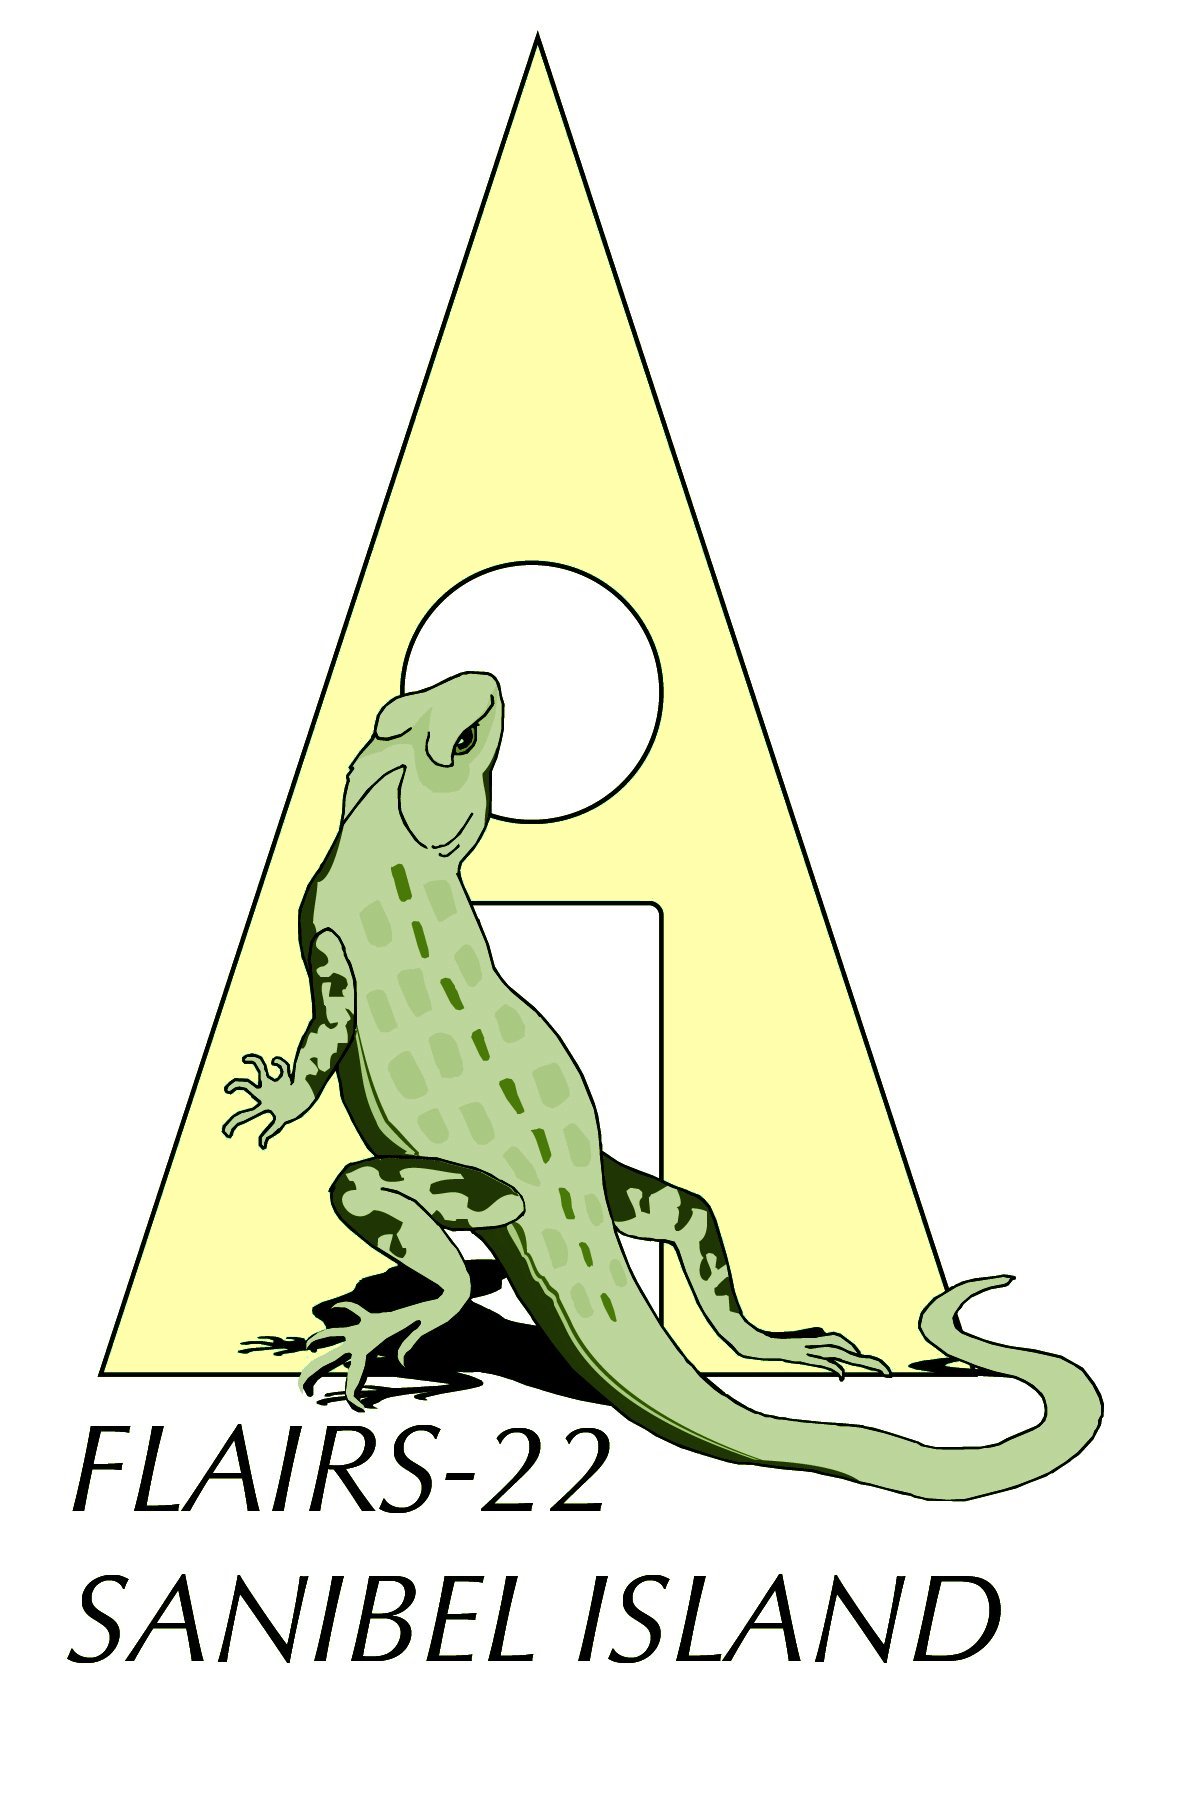 FLAIRS-22